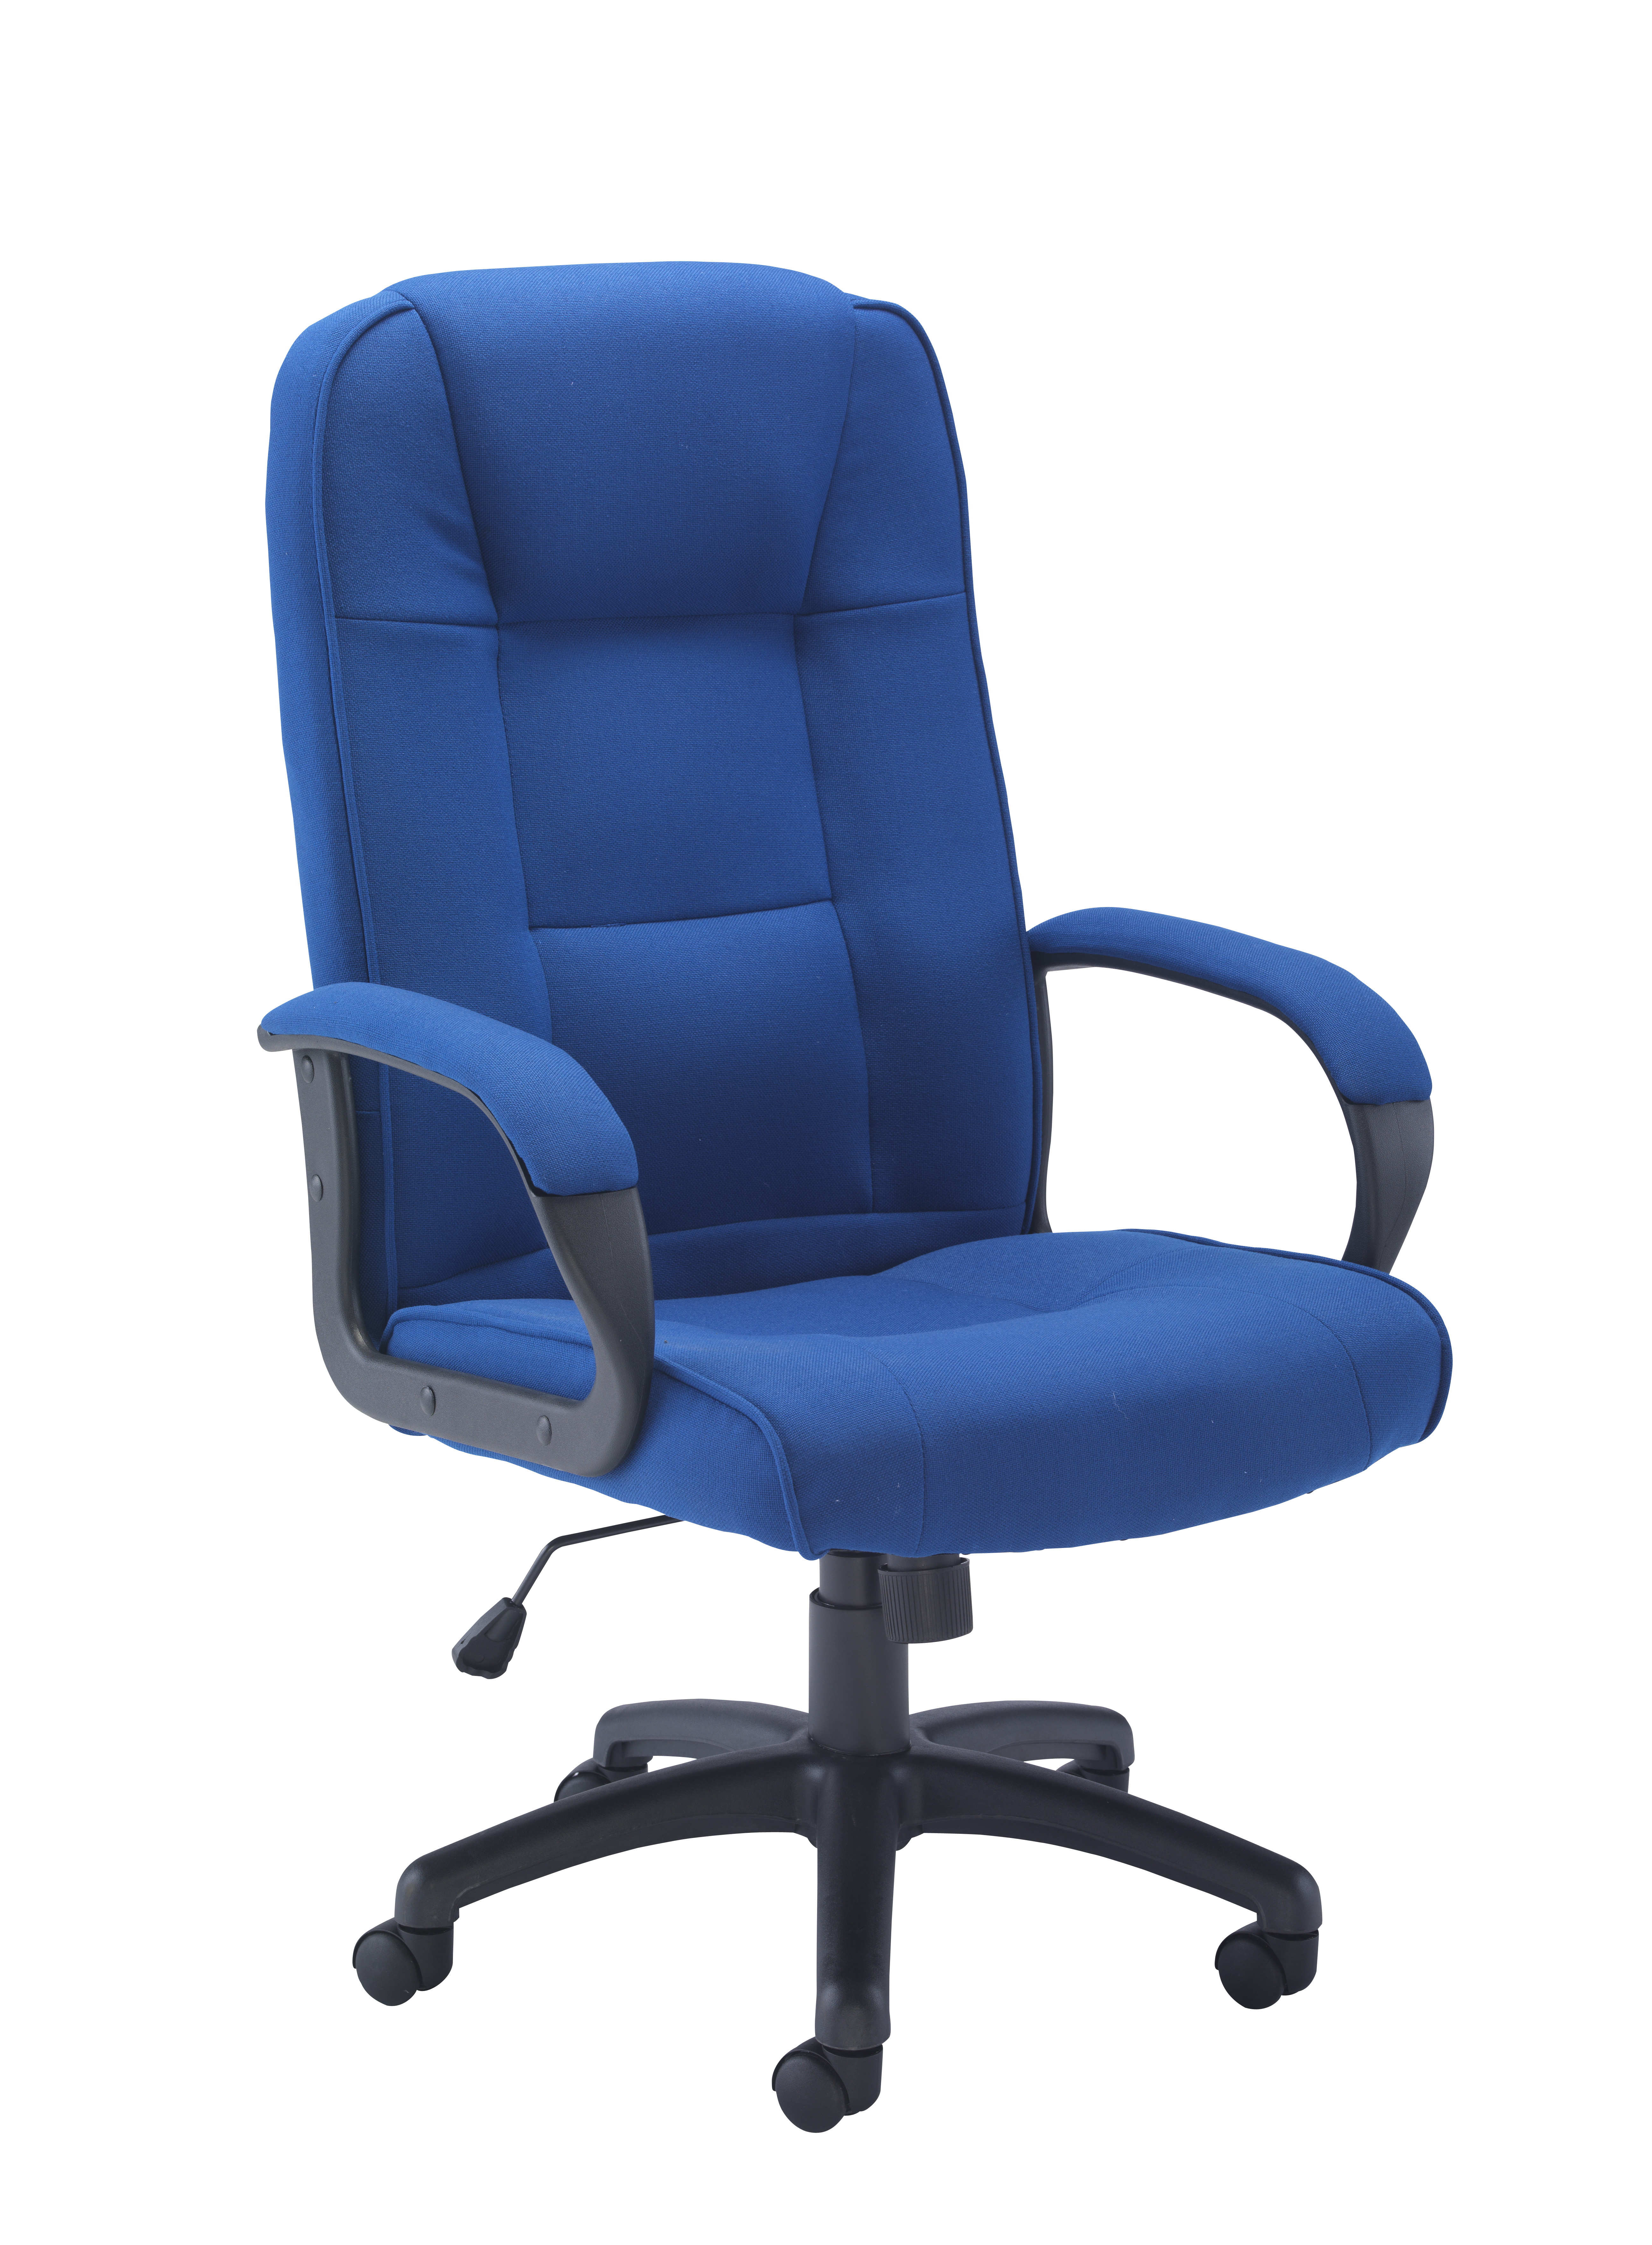 Keno Fabric Chair - Royal Blue